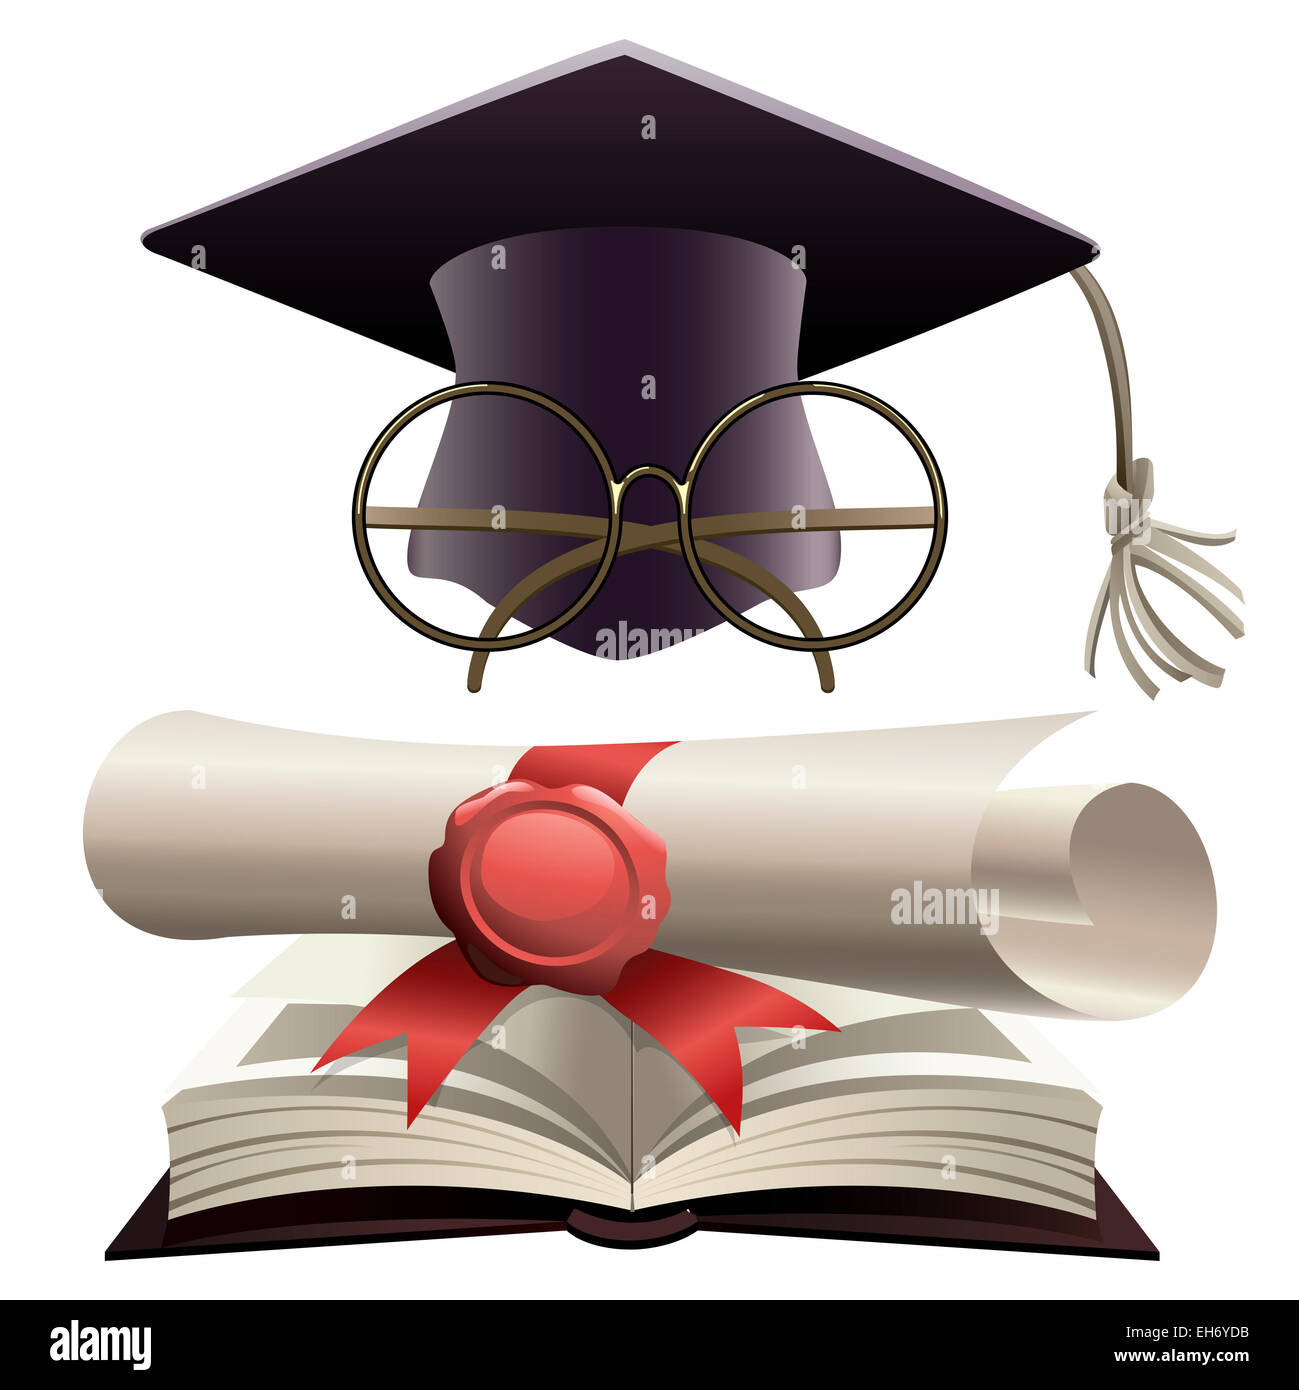 Illustration de baccalauréat en hat avec des lunettes et d'un diplôme sur un énorme livre de connaissances comme métaphore de l'éducation Banque D'Images